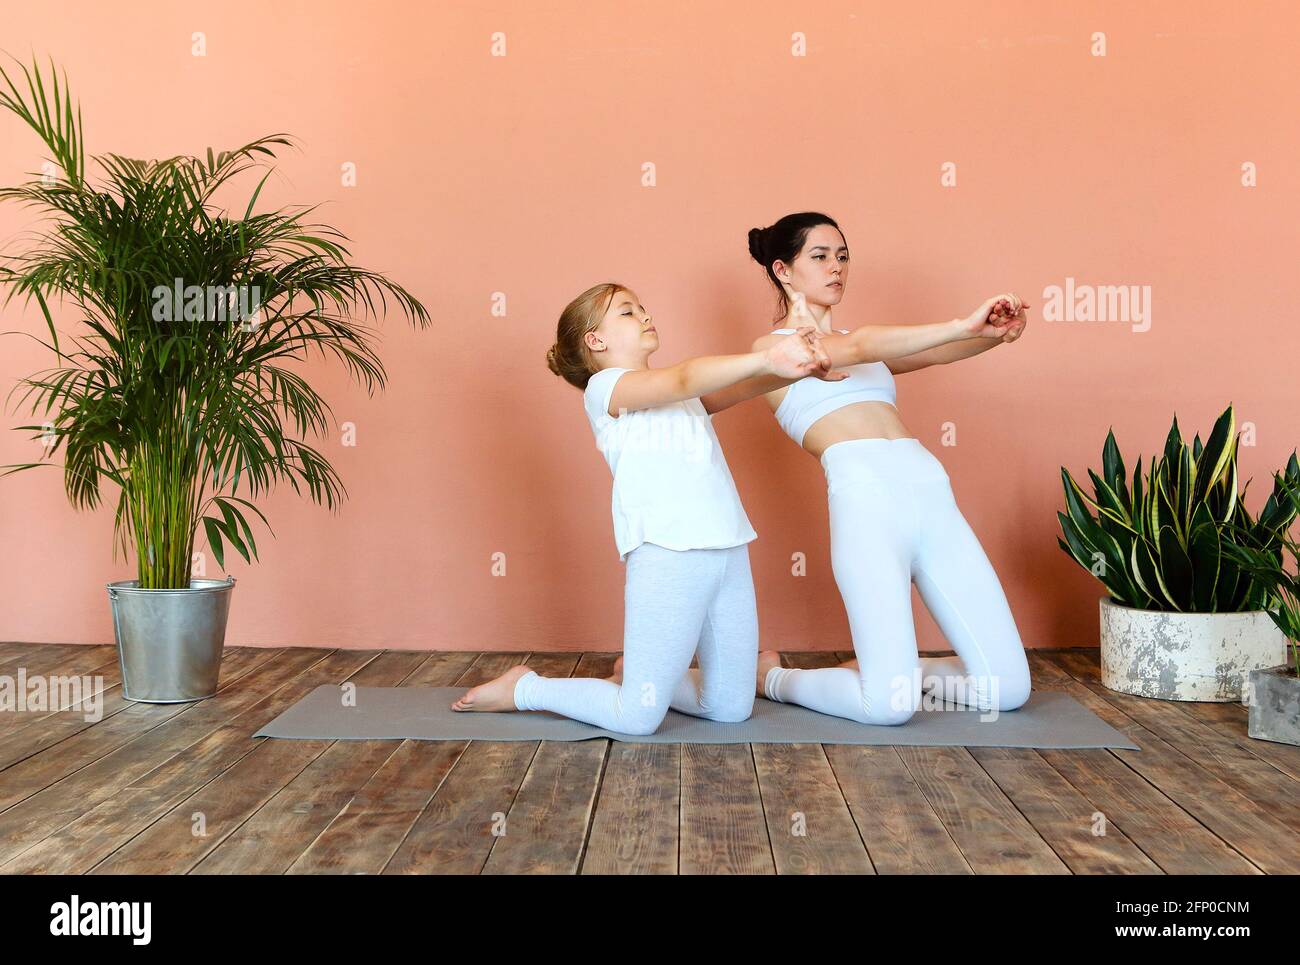 Seitenansicht einer lächelnden Frau und eines kleinen Mädchens, die Yoga praktizieren Beim Stehen auf der Matte im gemütlichen Wohnzimmer und Wegschauen Stockfoto